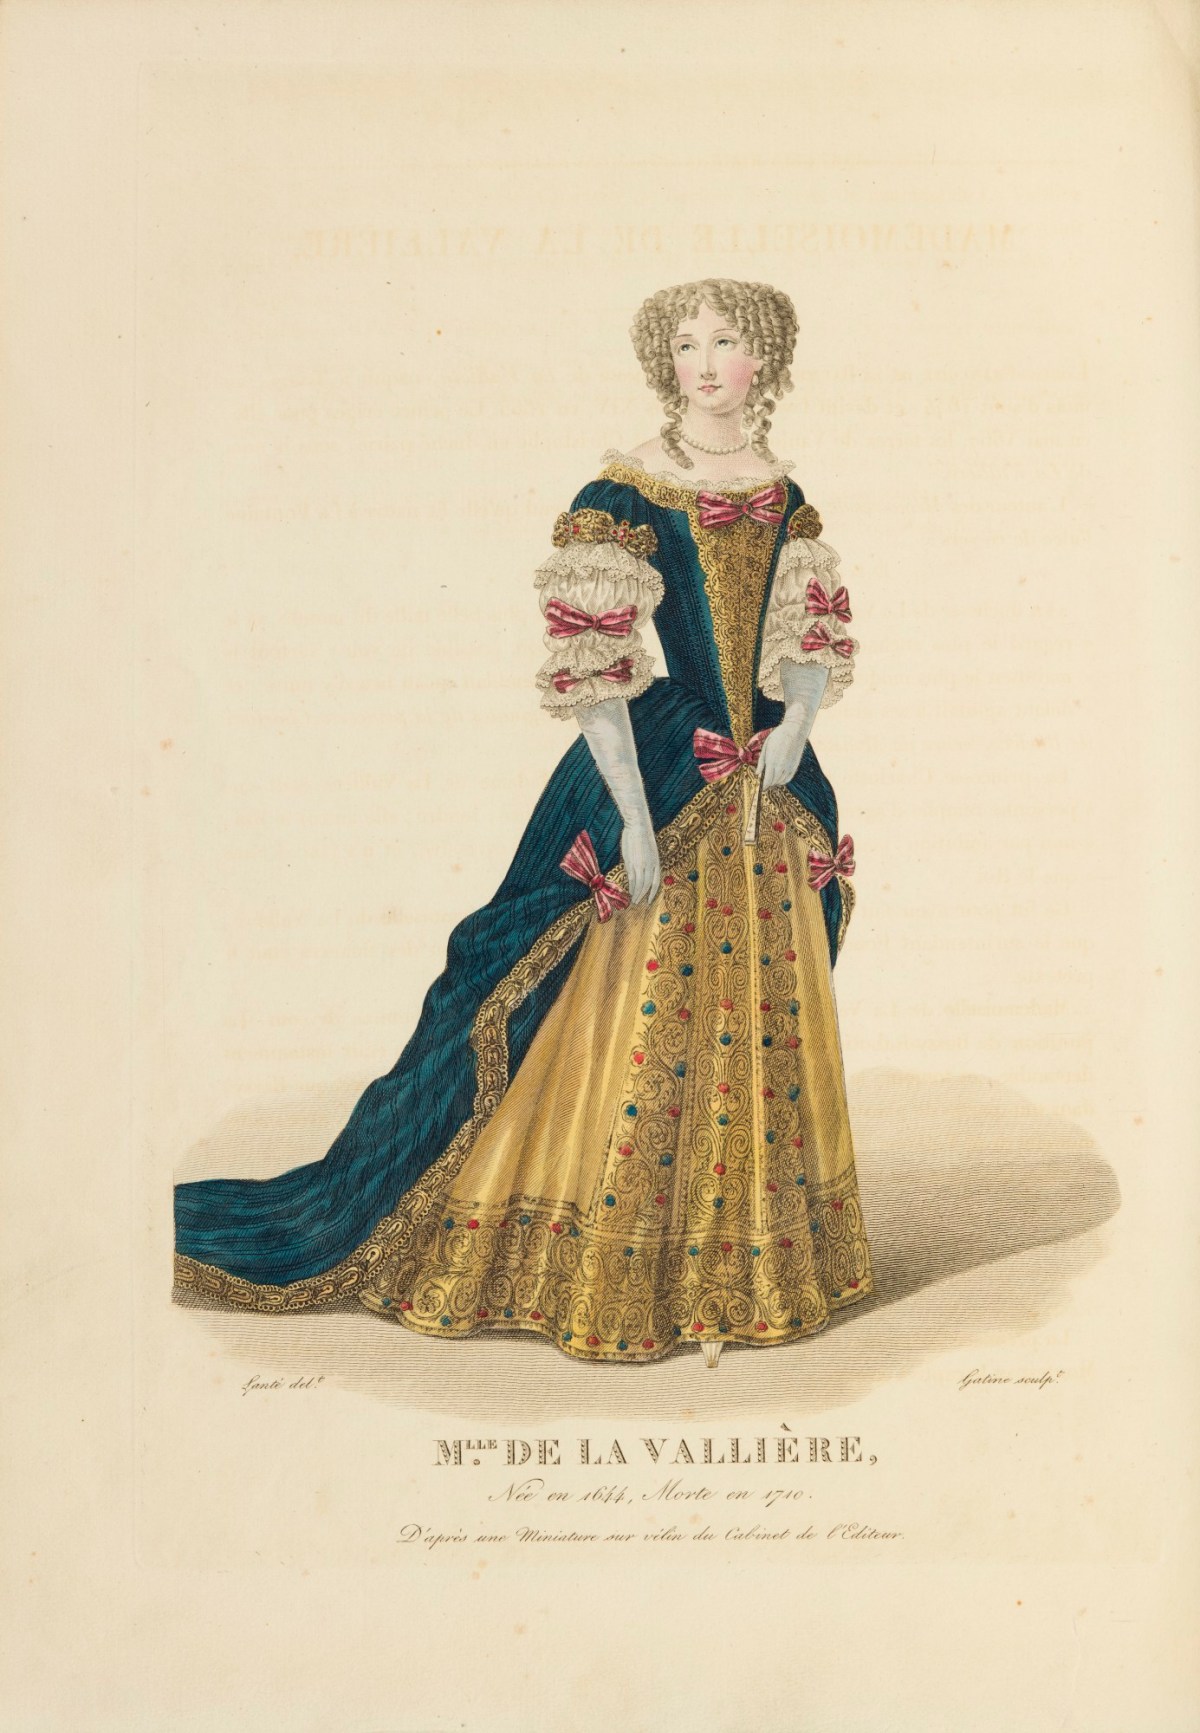 M lle boncourt тургенев сколько лет. Франция мода Гравюры. Гравюры Франция 14 век. Гравюра женщины Франция. Мода 1690 Дамская.